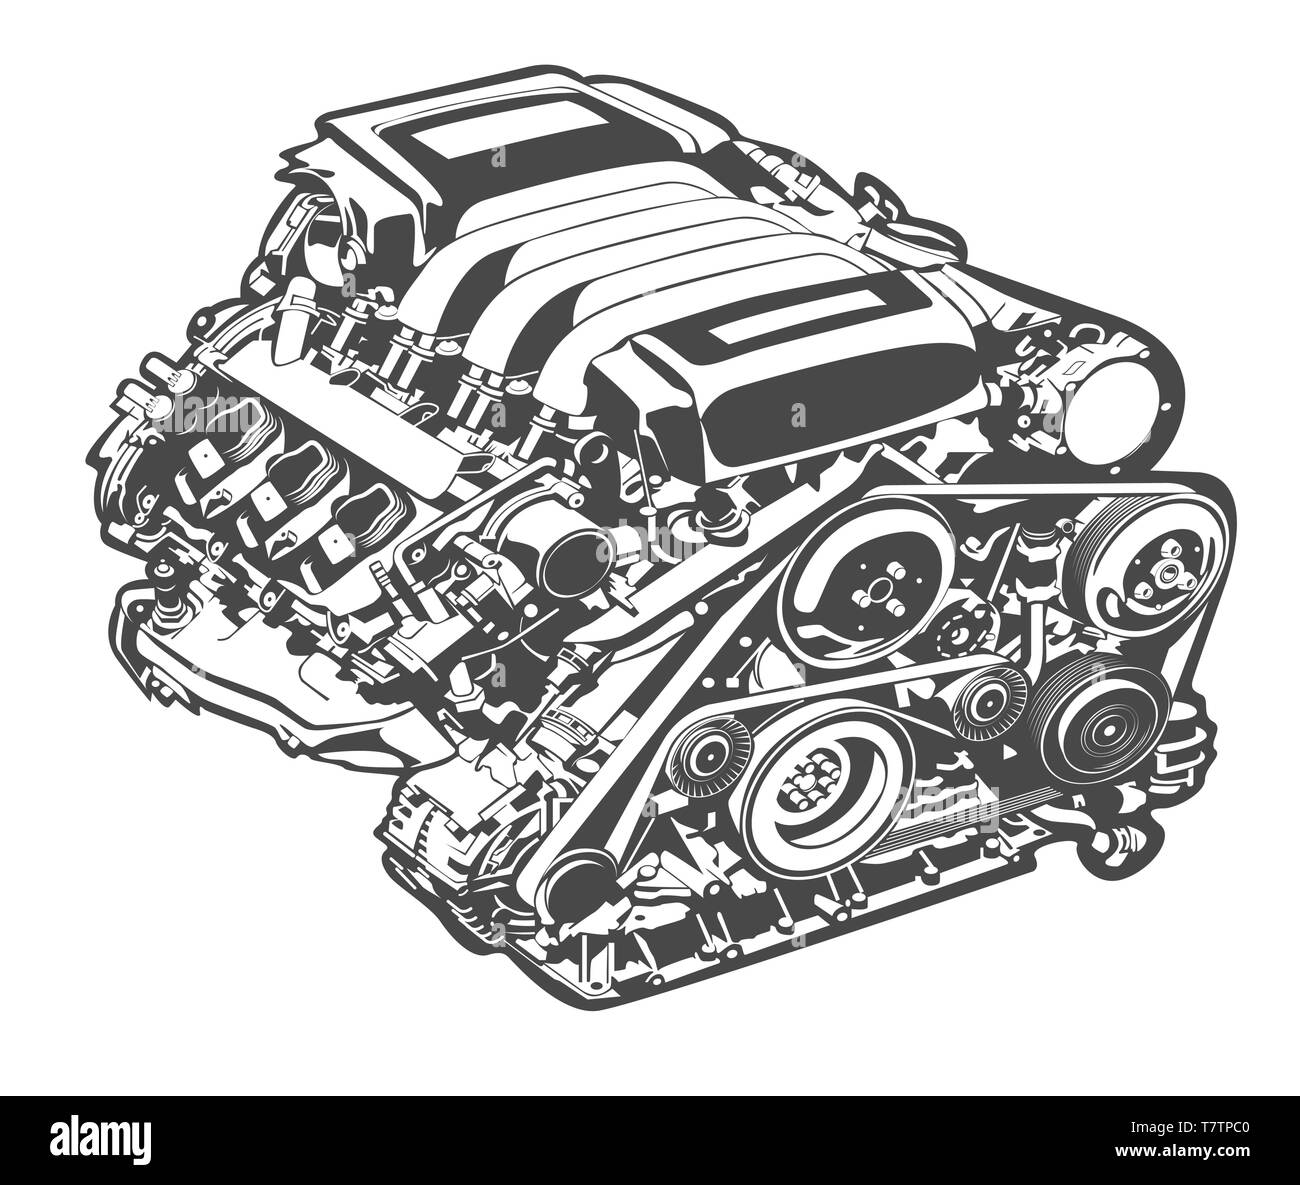 Vektor hoch detaillierte Darstellung von Auto Motor Stock Vektor